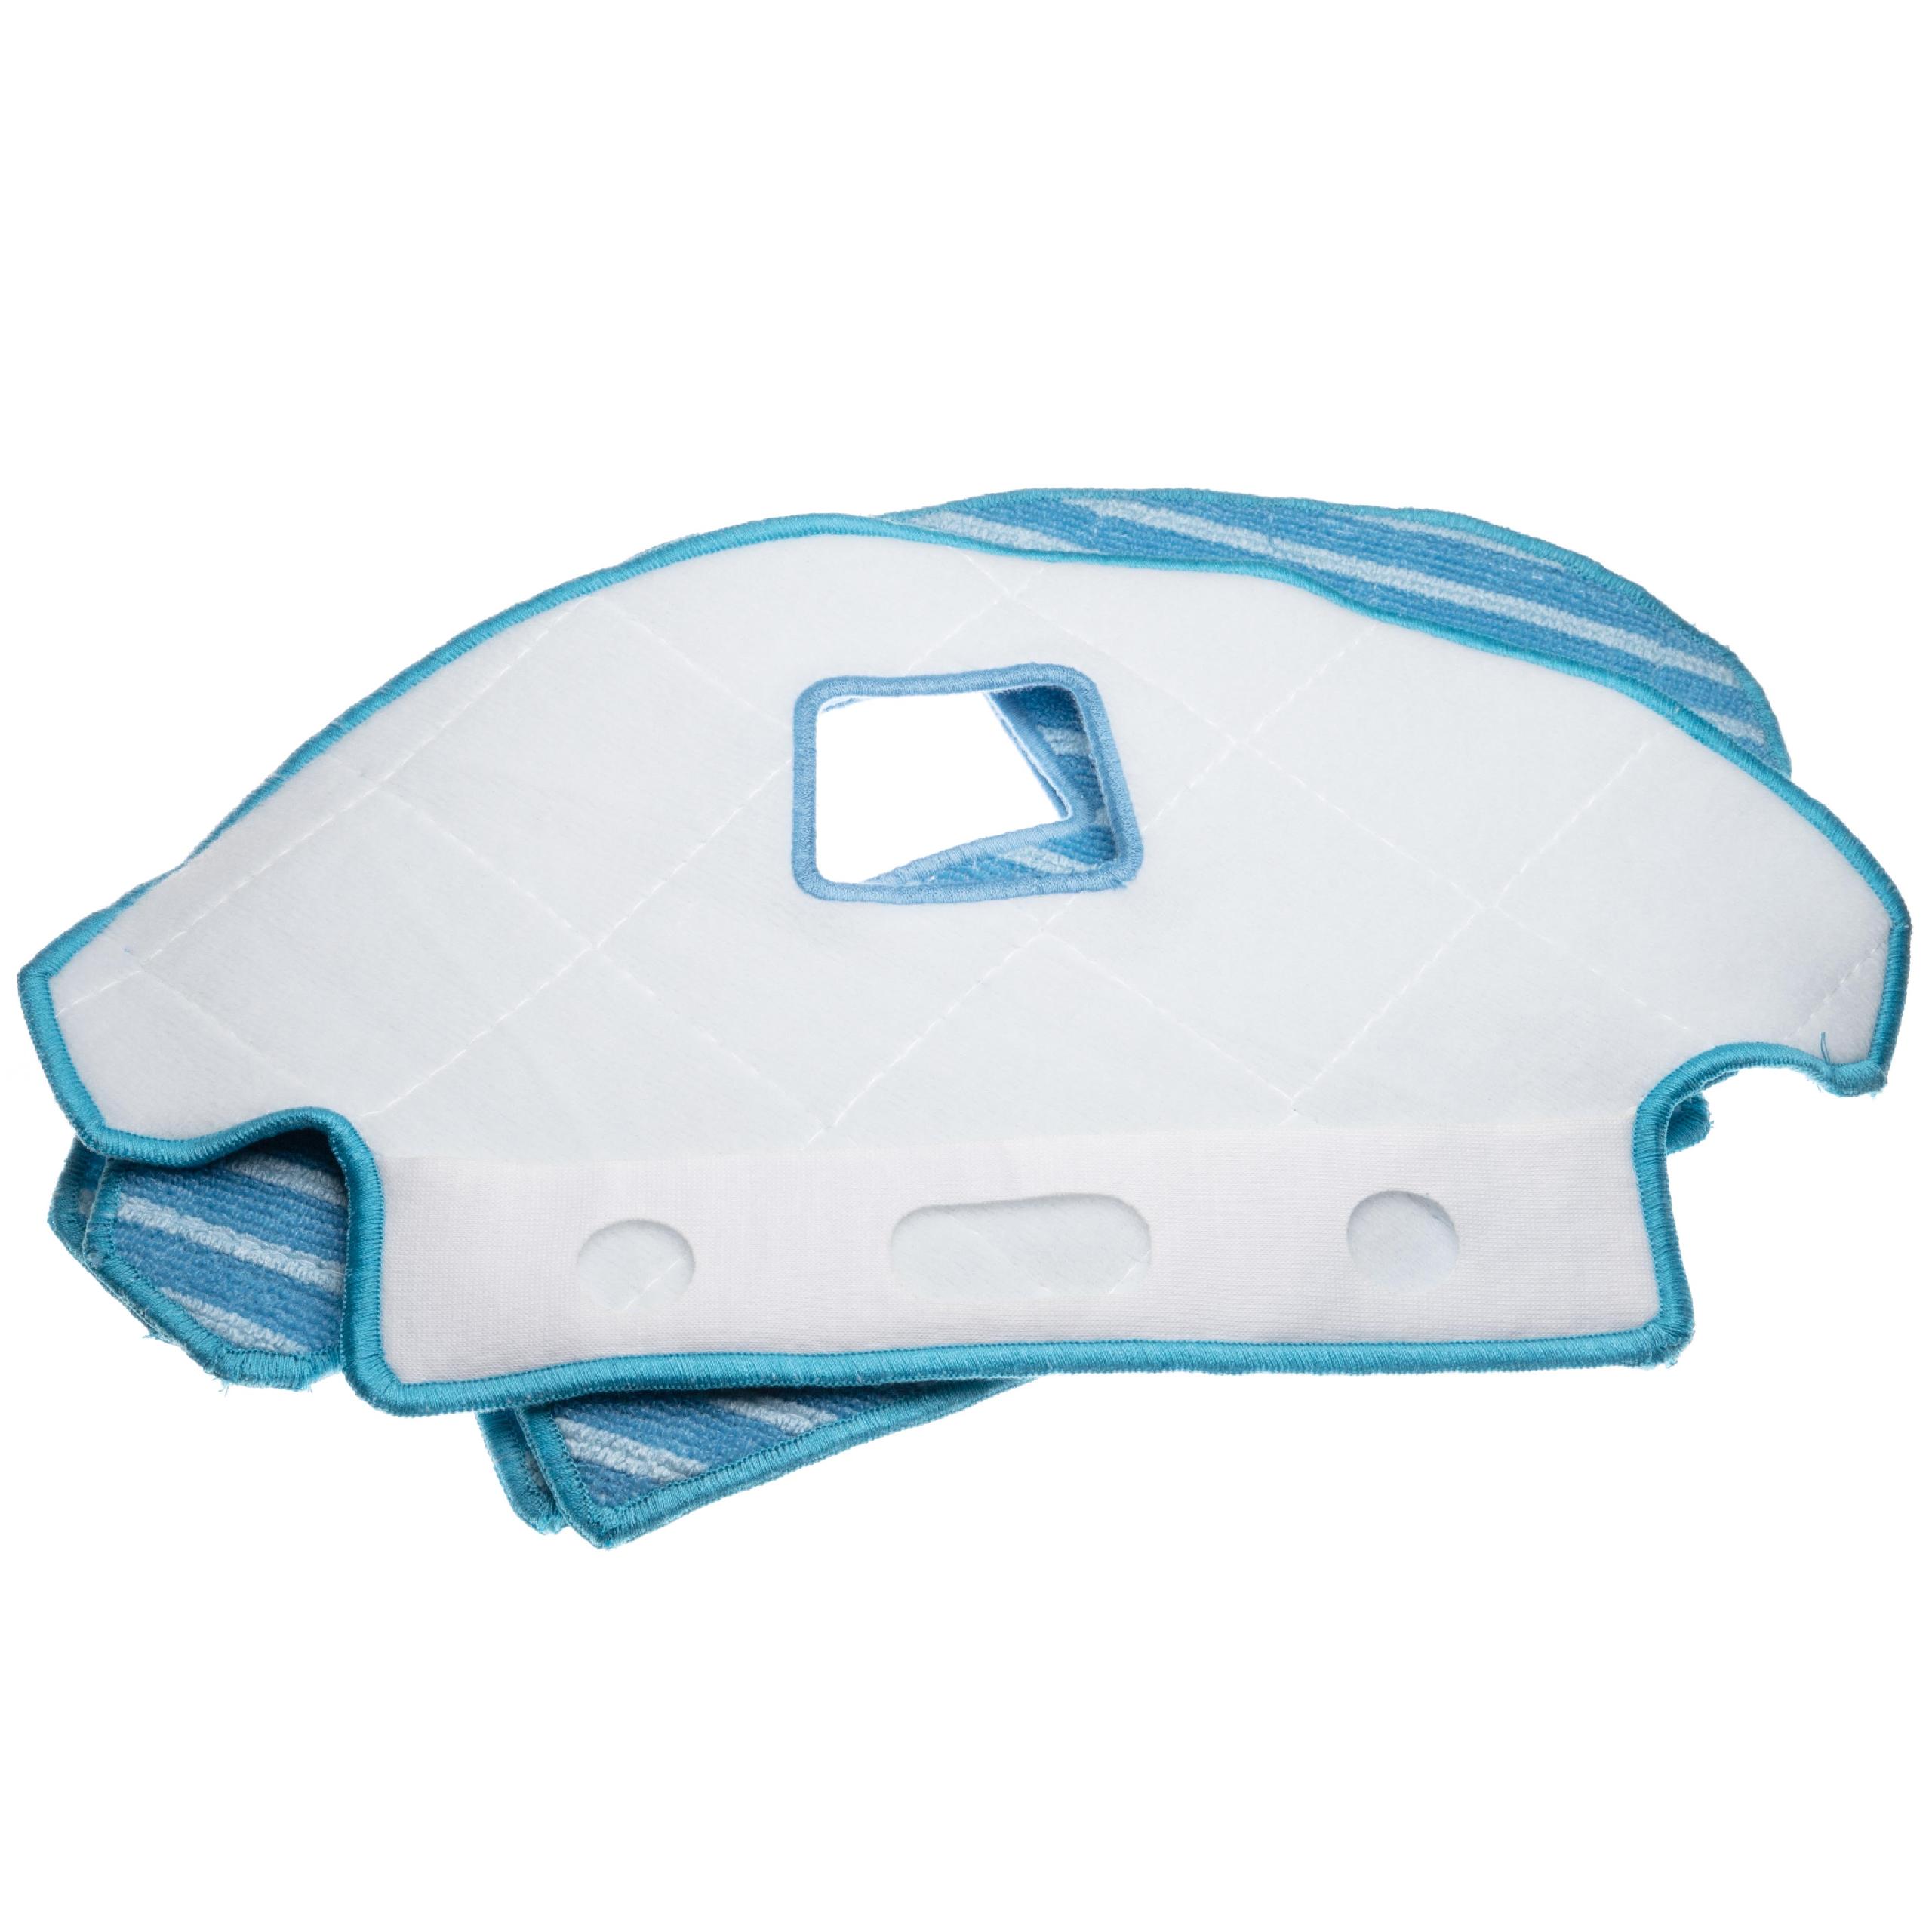 Set di panni (1x Supporto, 3x panni in microfibra) per aspirapolvere Ecovacs Deebot Ozmo 930 - plastica, blu